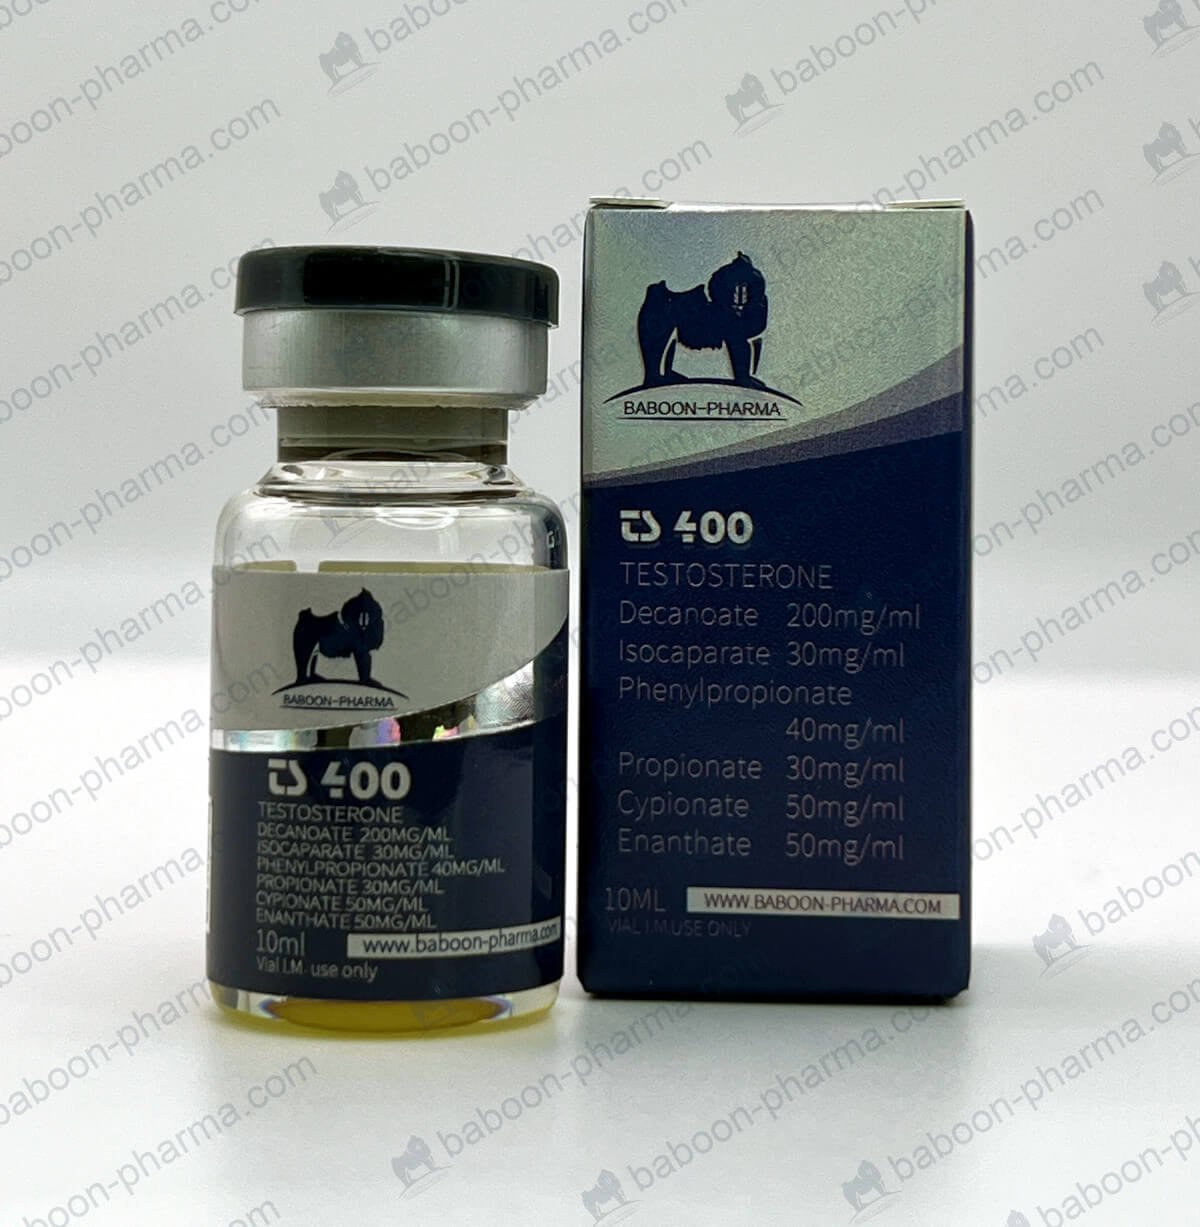 Pavián-Pharma-Oil_TS400_1